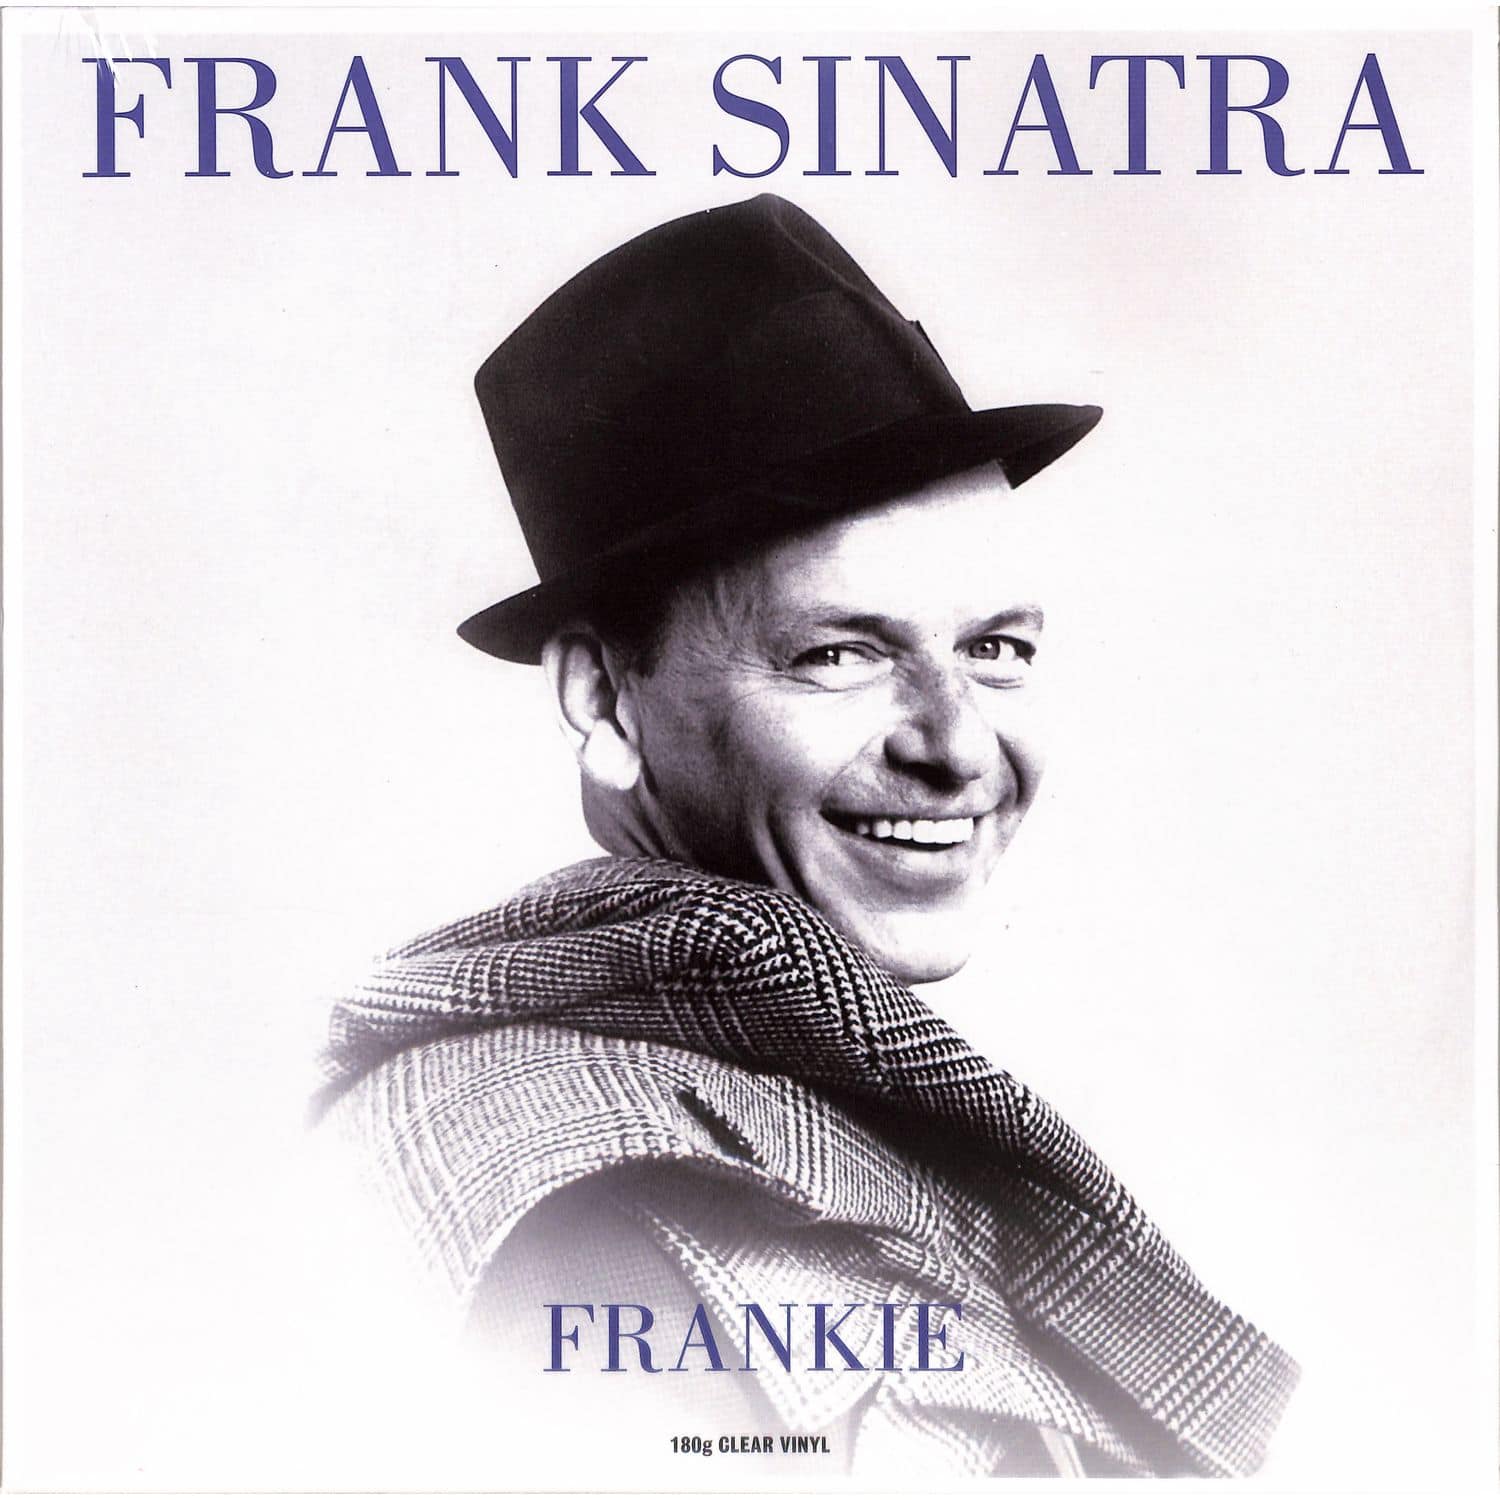 Frank Sinatra - FRANKIE 